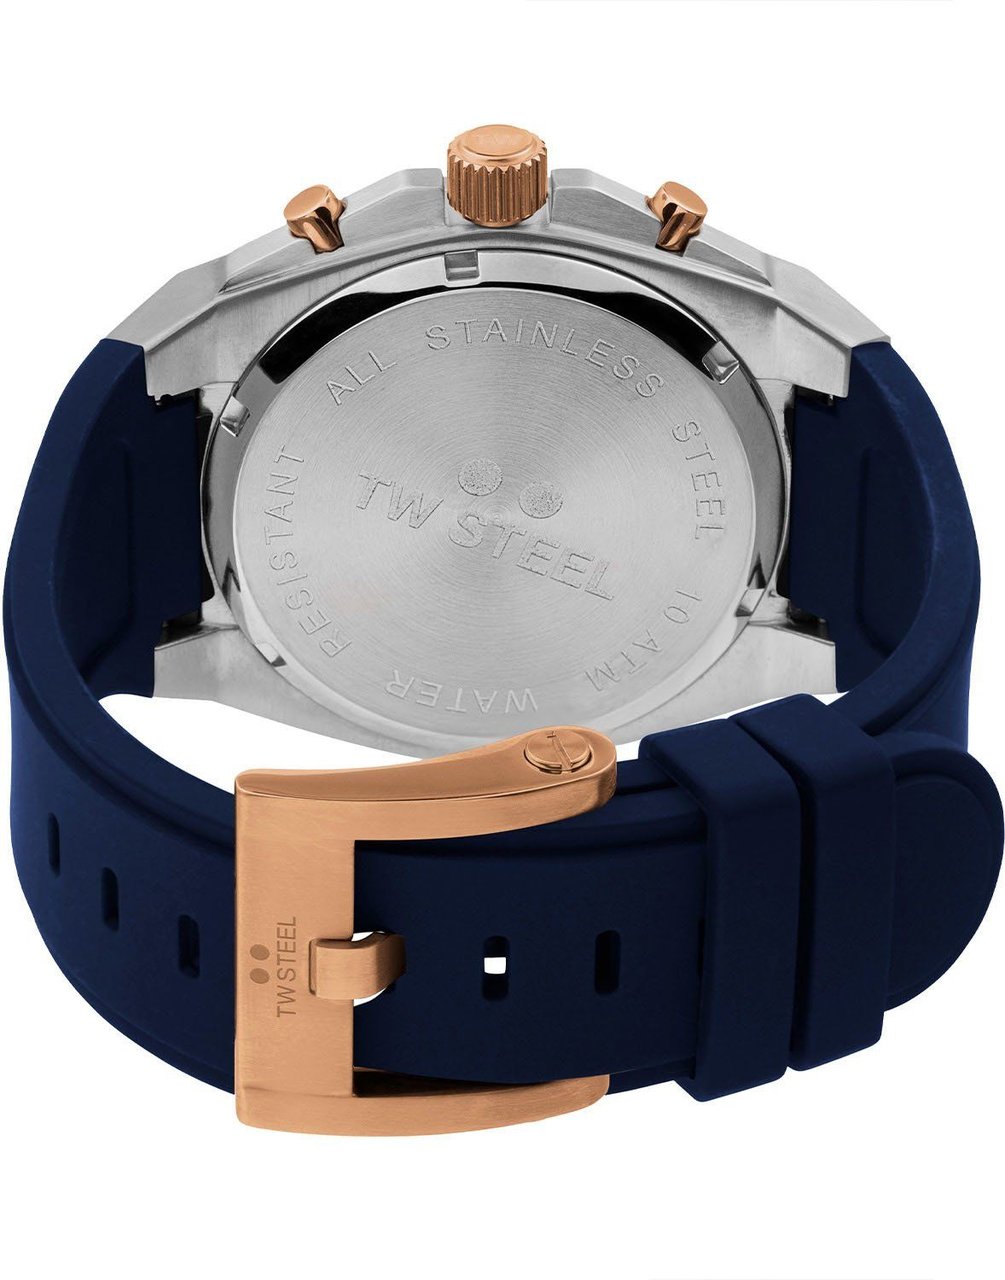 TW Steel CE4105 CEO Tech chronograaf horloge 44 mm Blauw